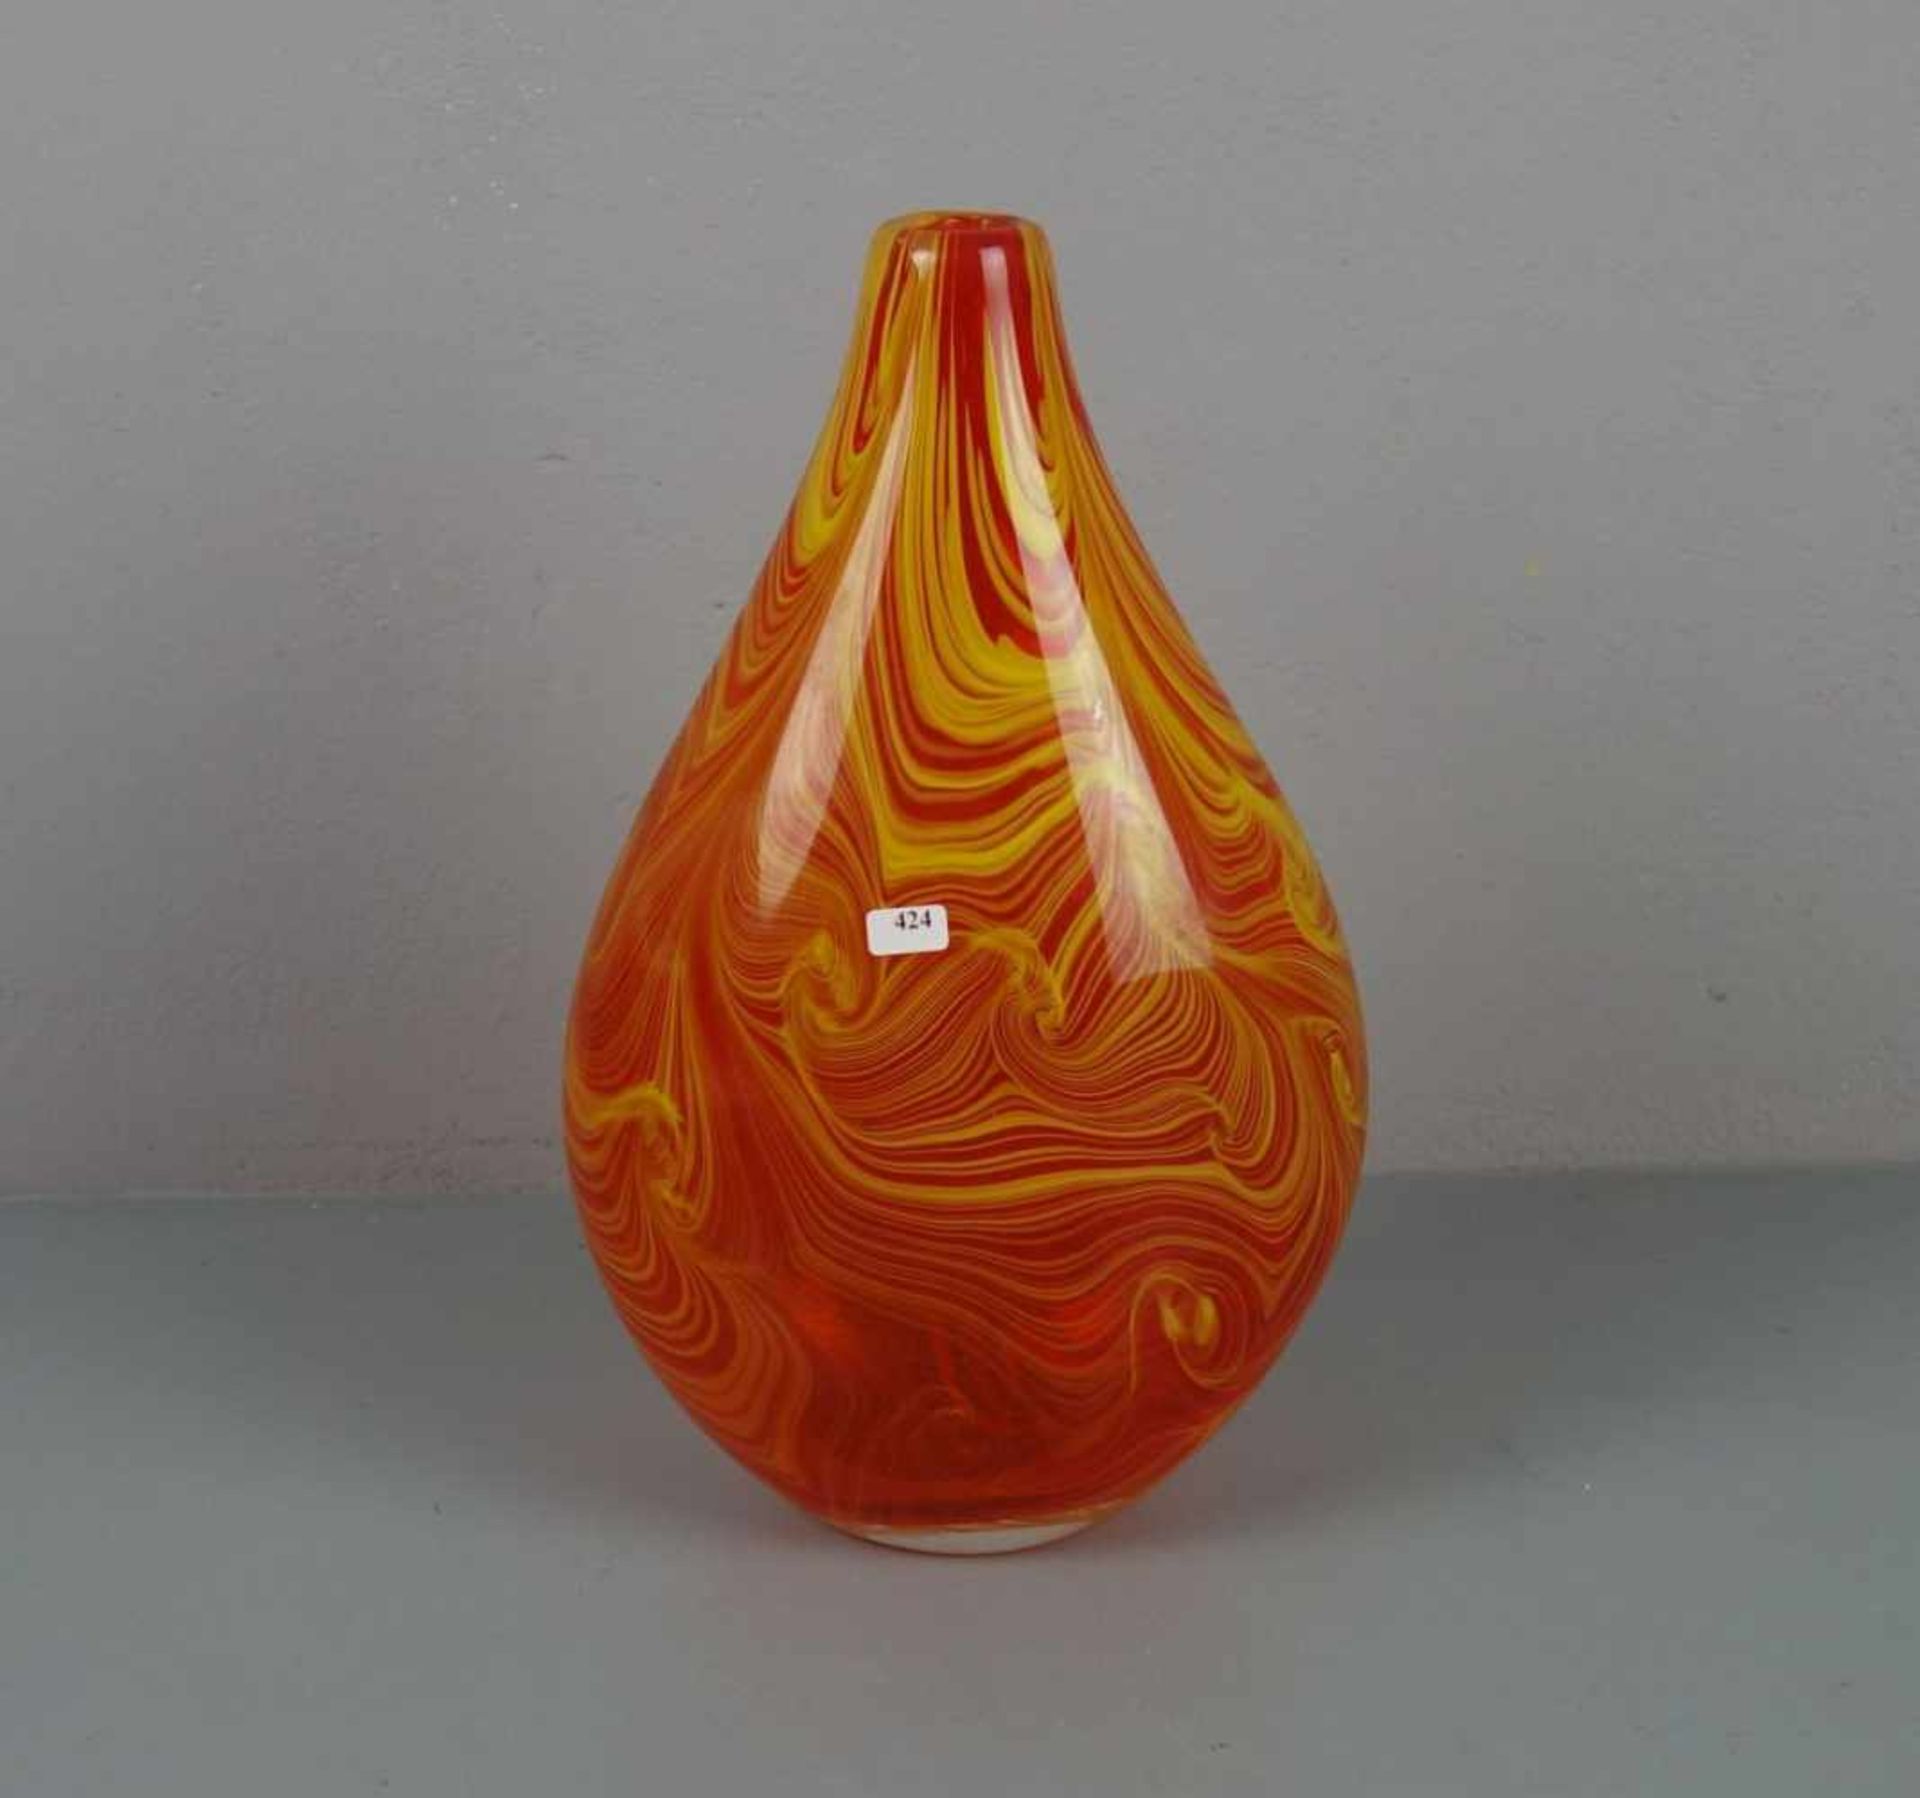 MURANO - GLASVASE, Klarglas mit eingekämmten gelben Fäden und orangefarbenem Unterfang. Ovaler